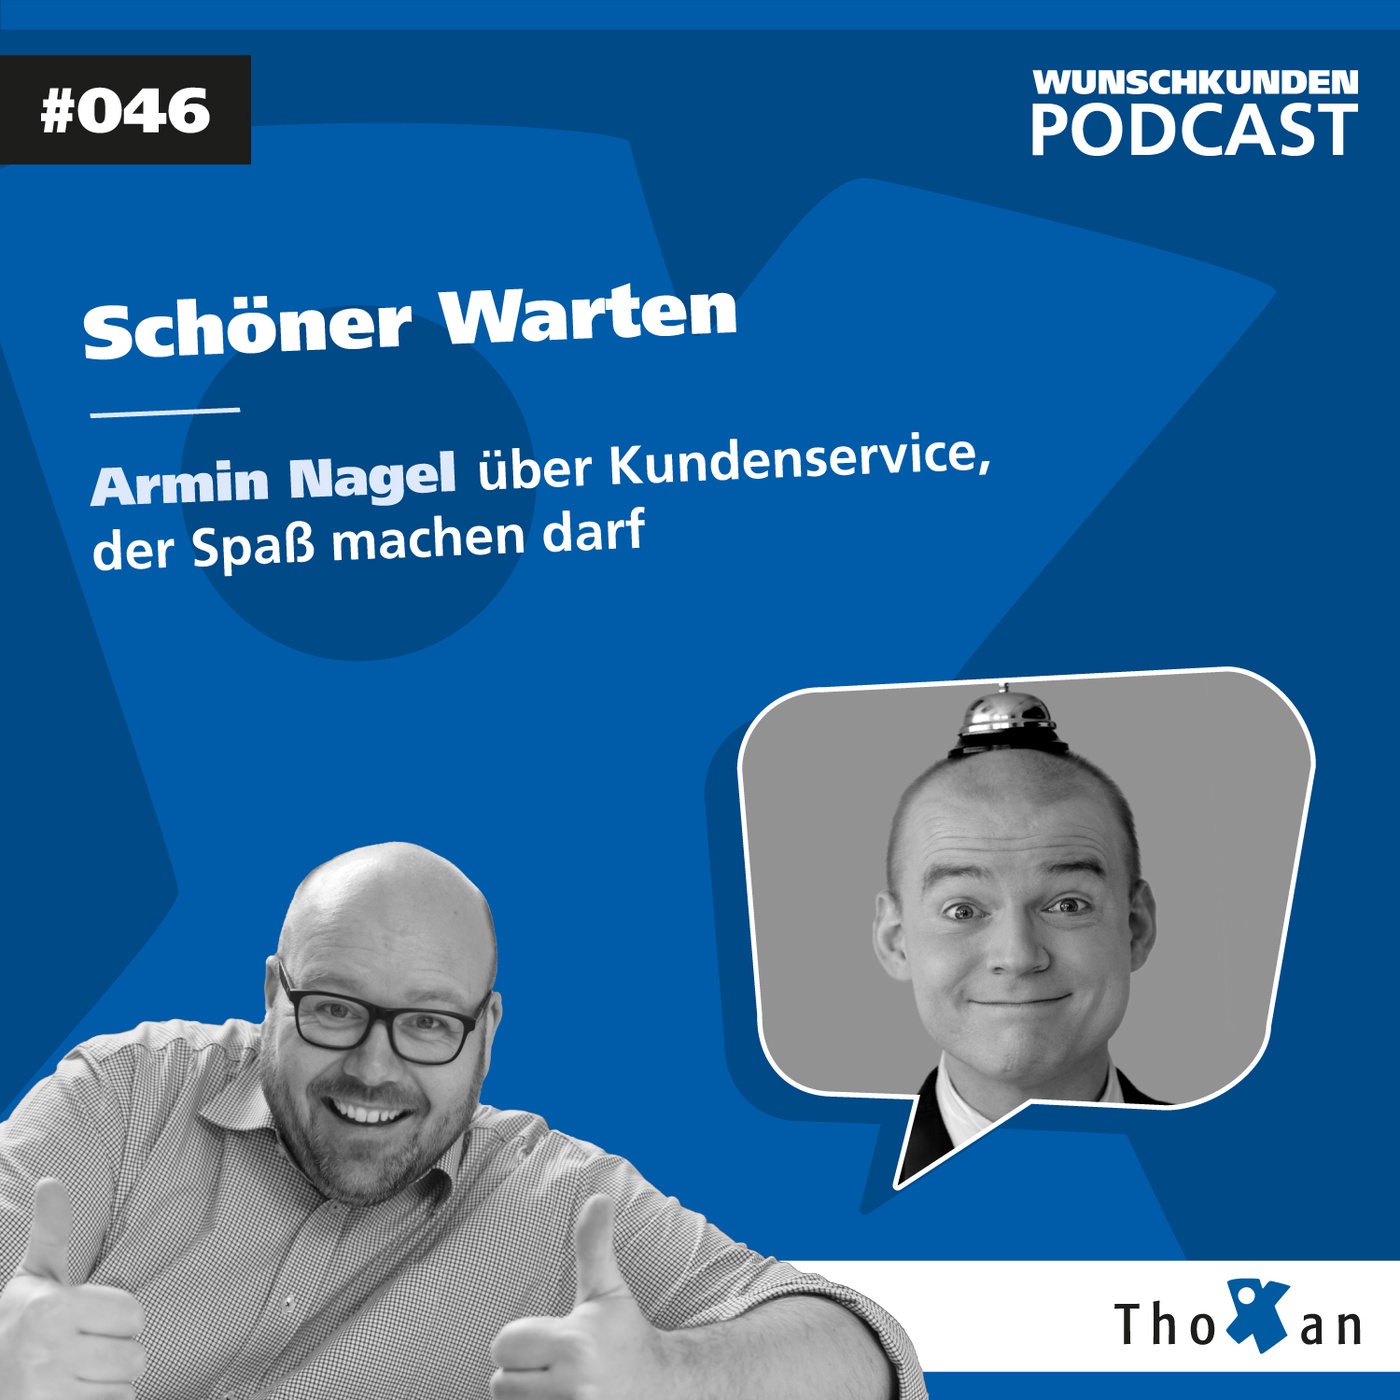 Schöner Warten: Armin Nagel über Kundenservice, der Spaß machen darf